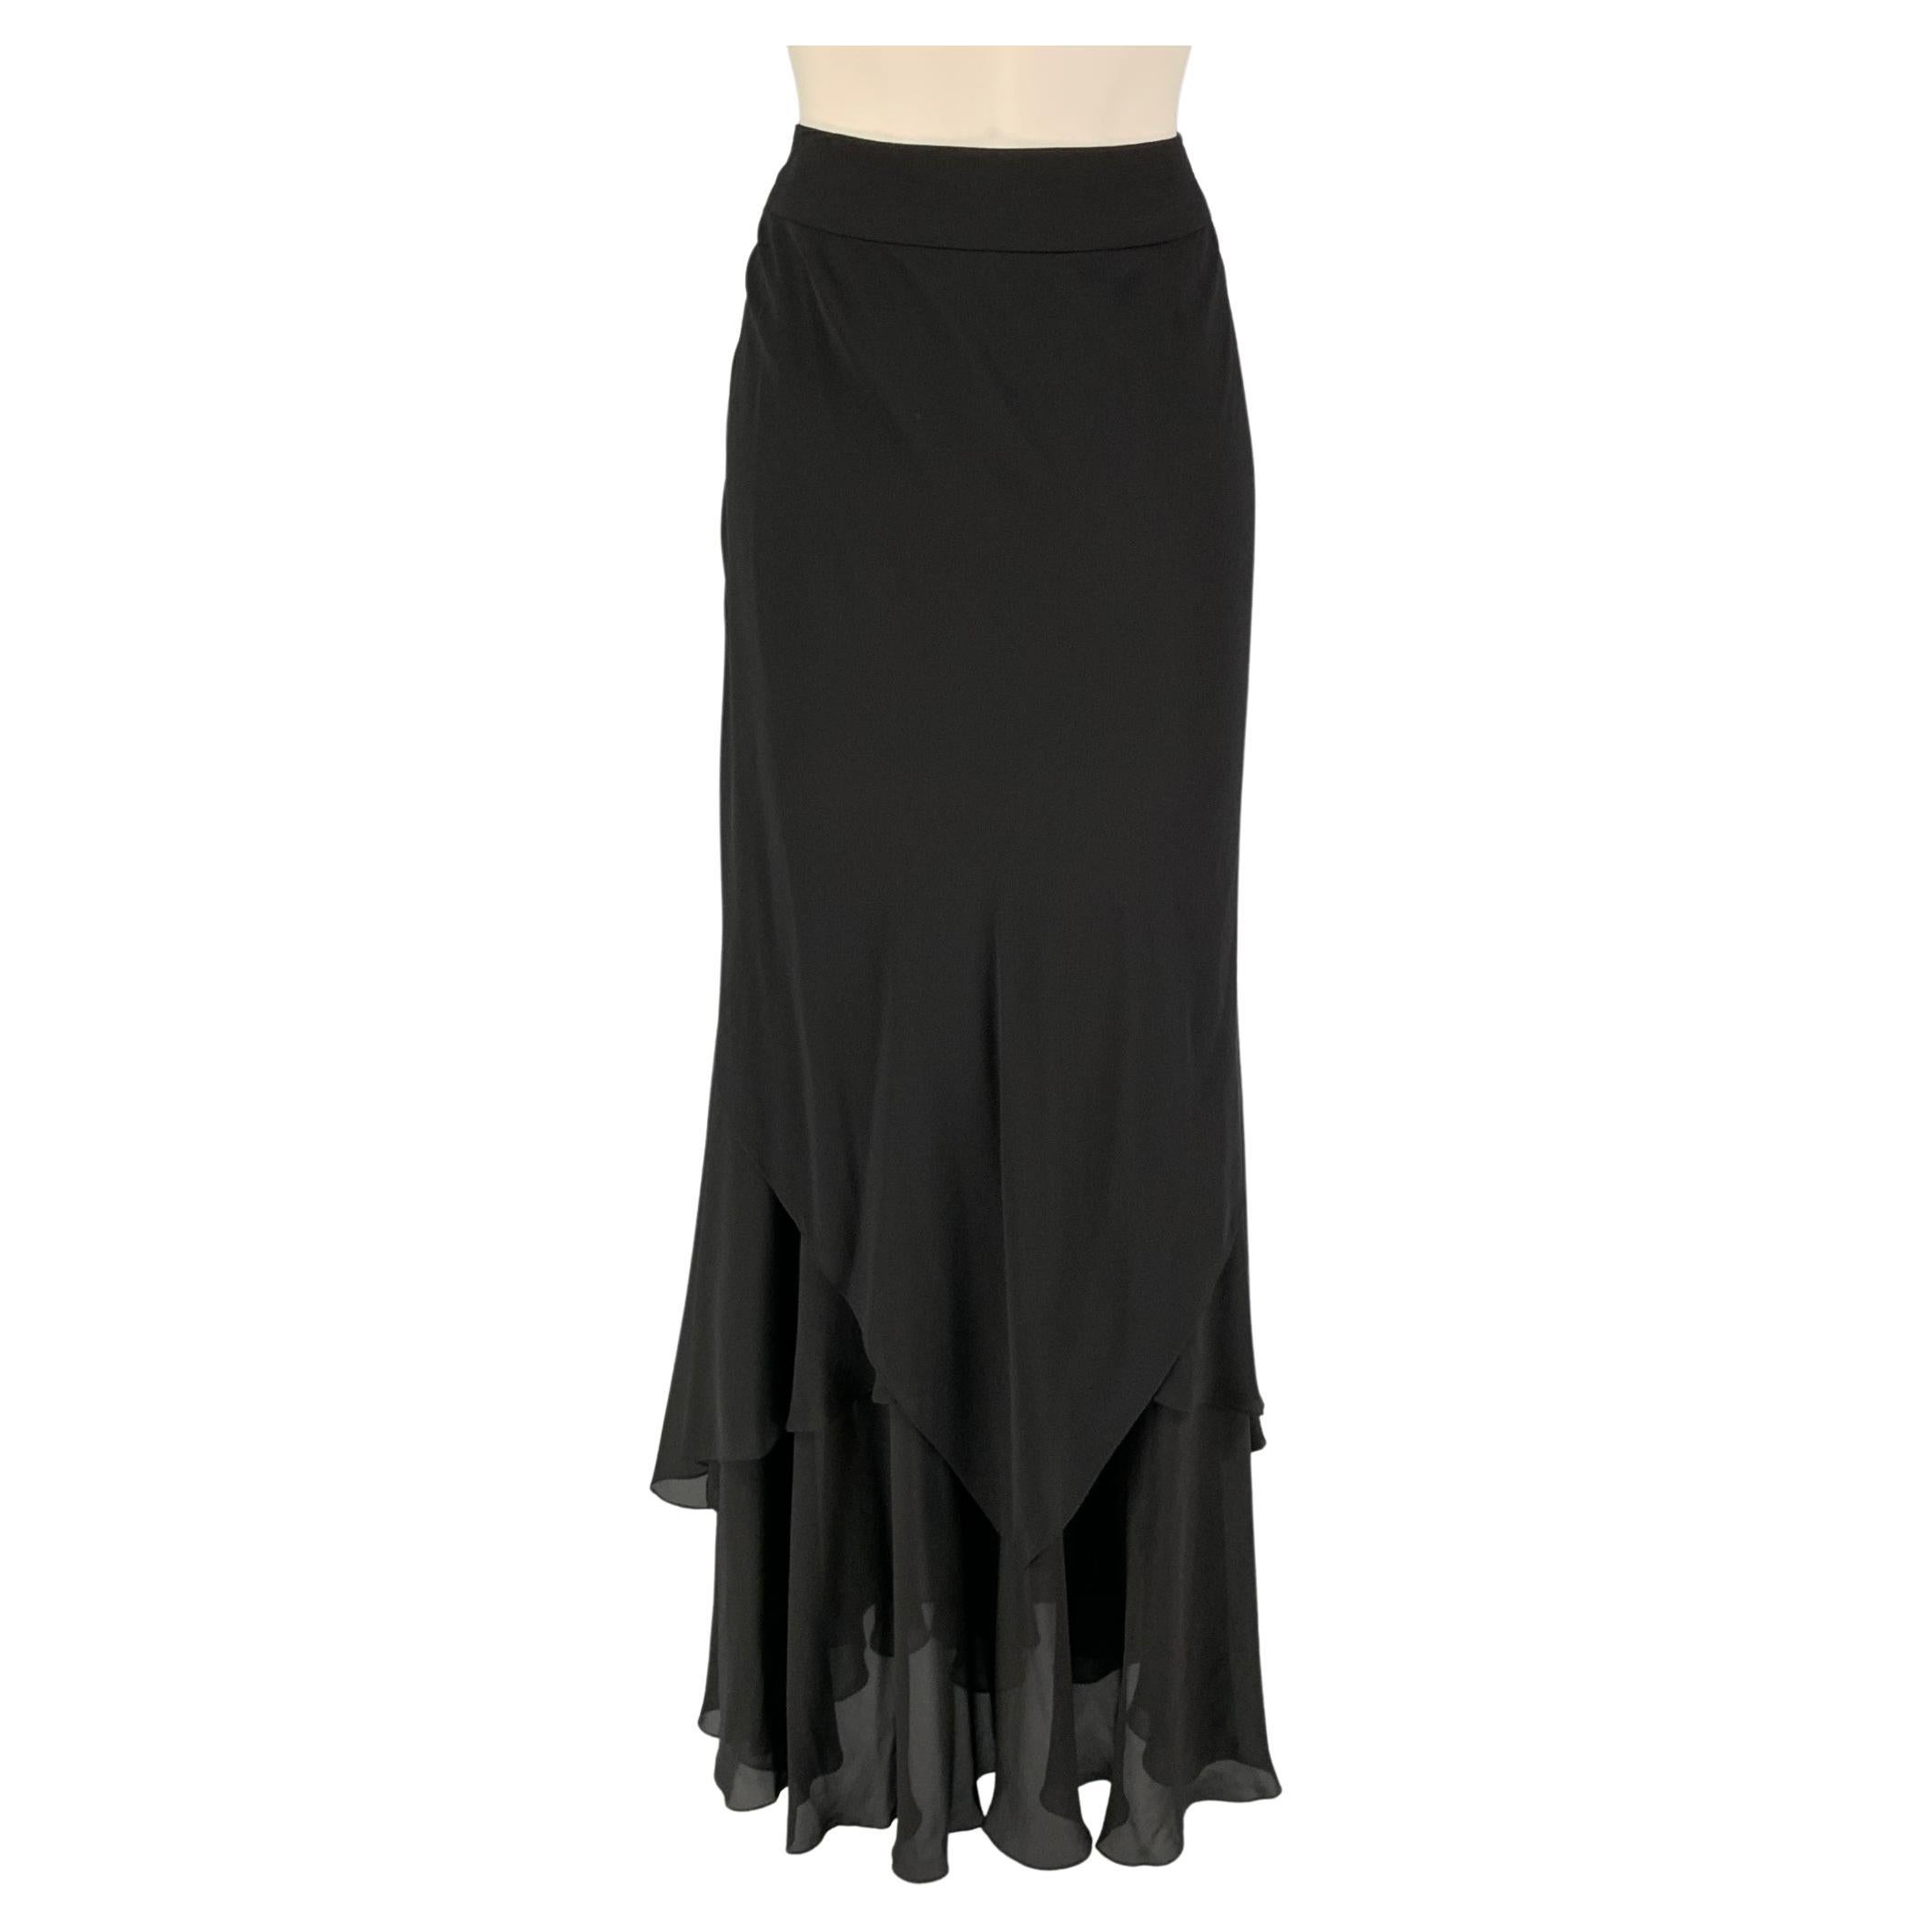 CARMEN MARC VALVO Size 6 Black Ruffled Asymmetrical Long Skirt